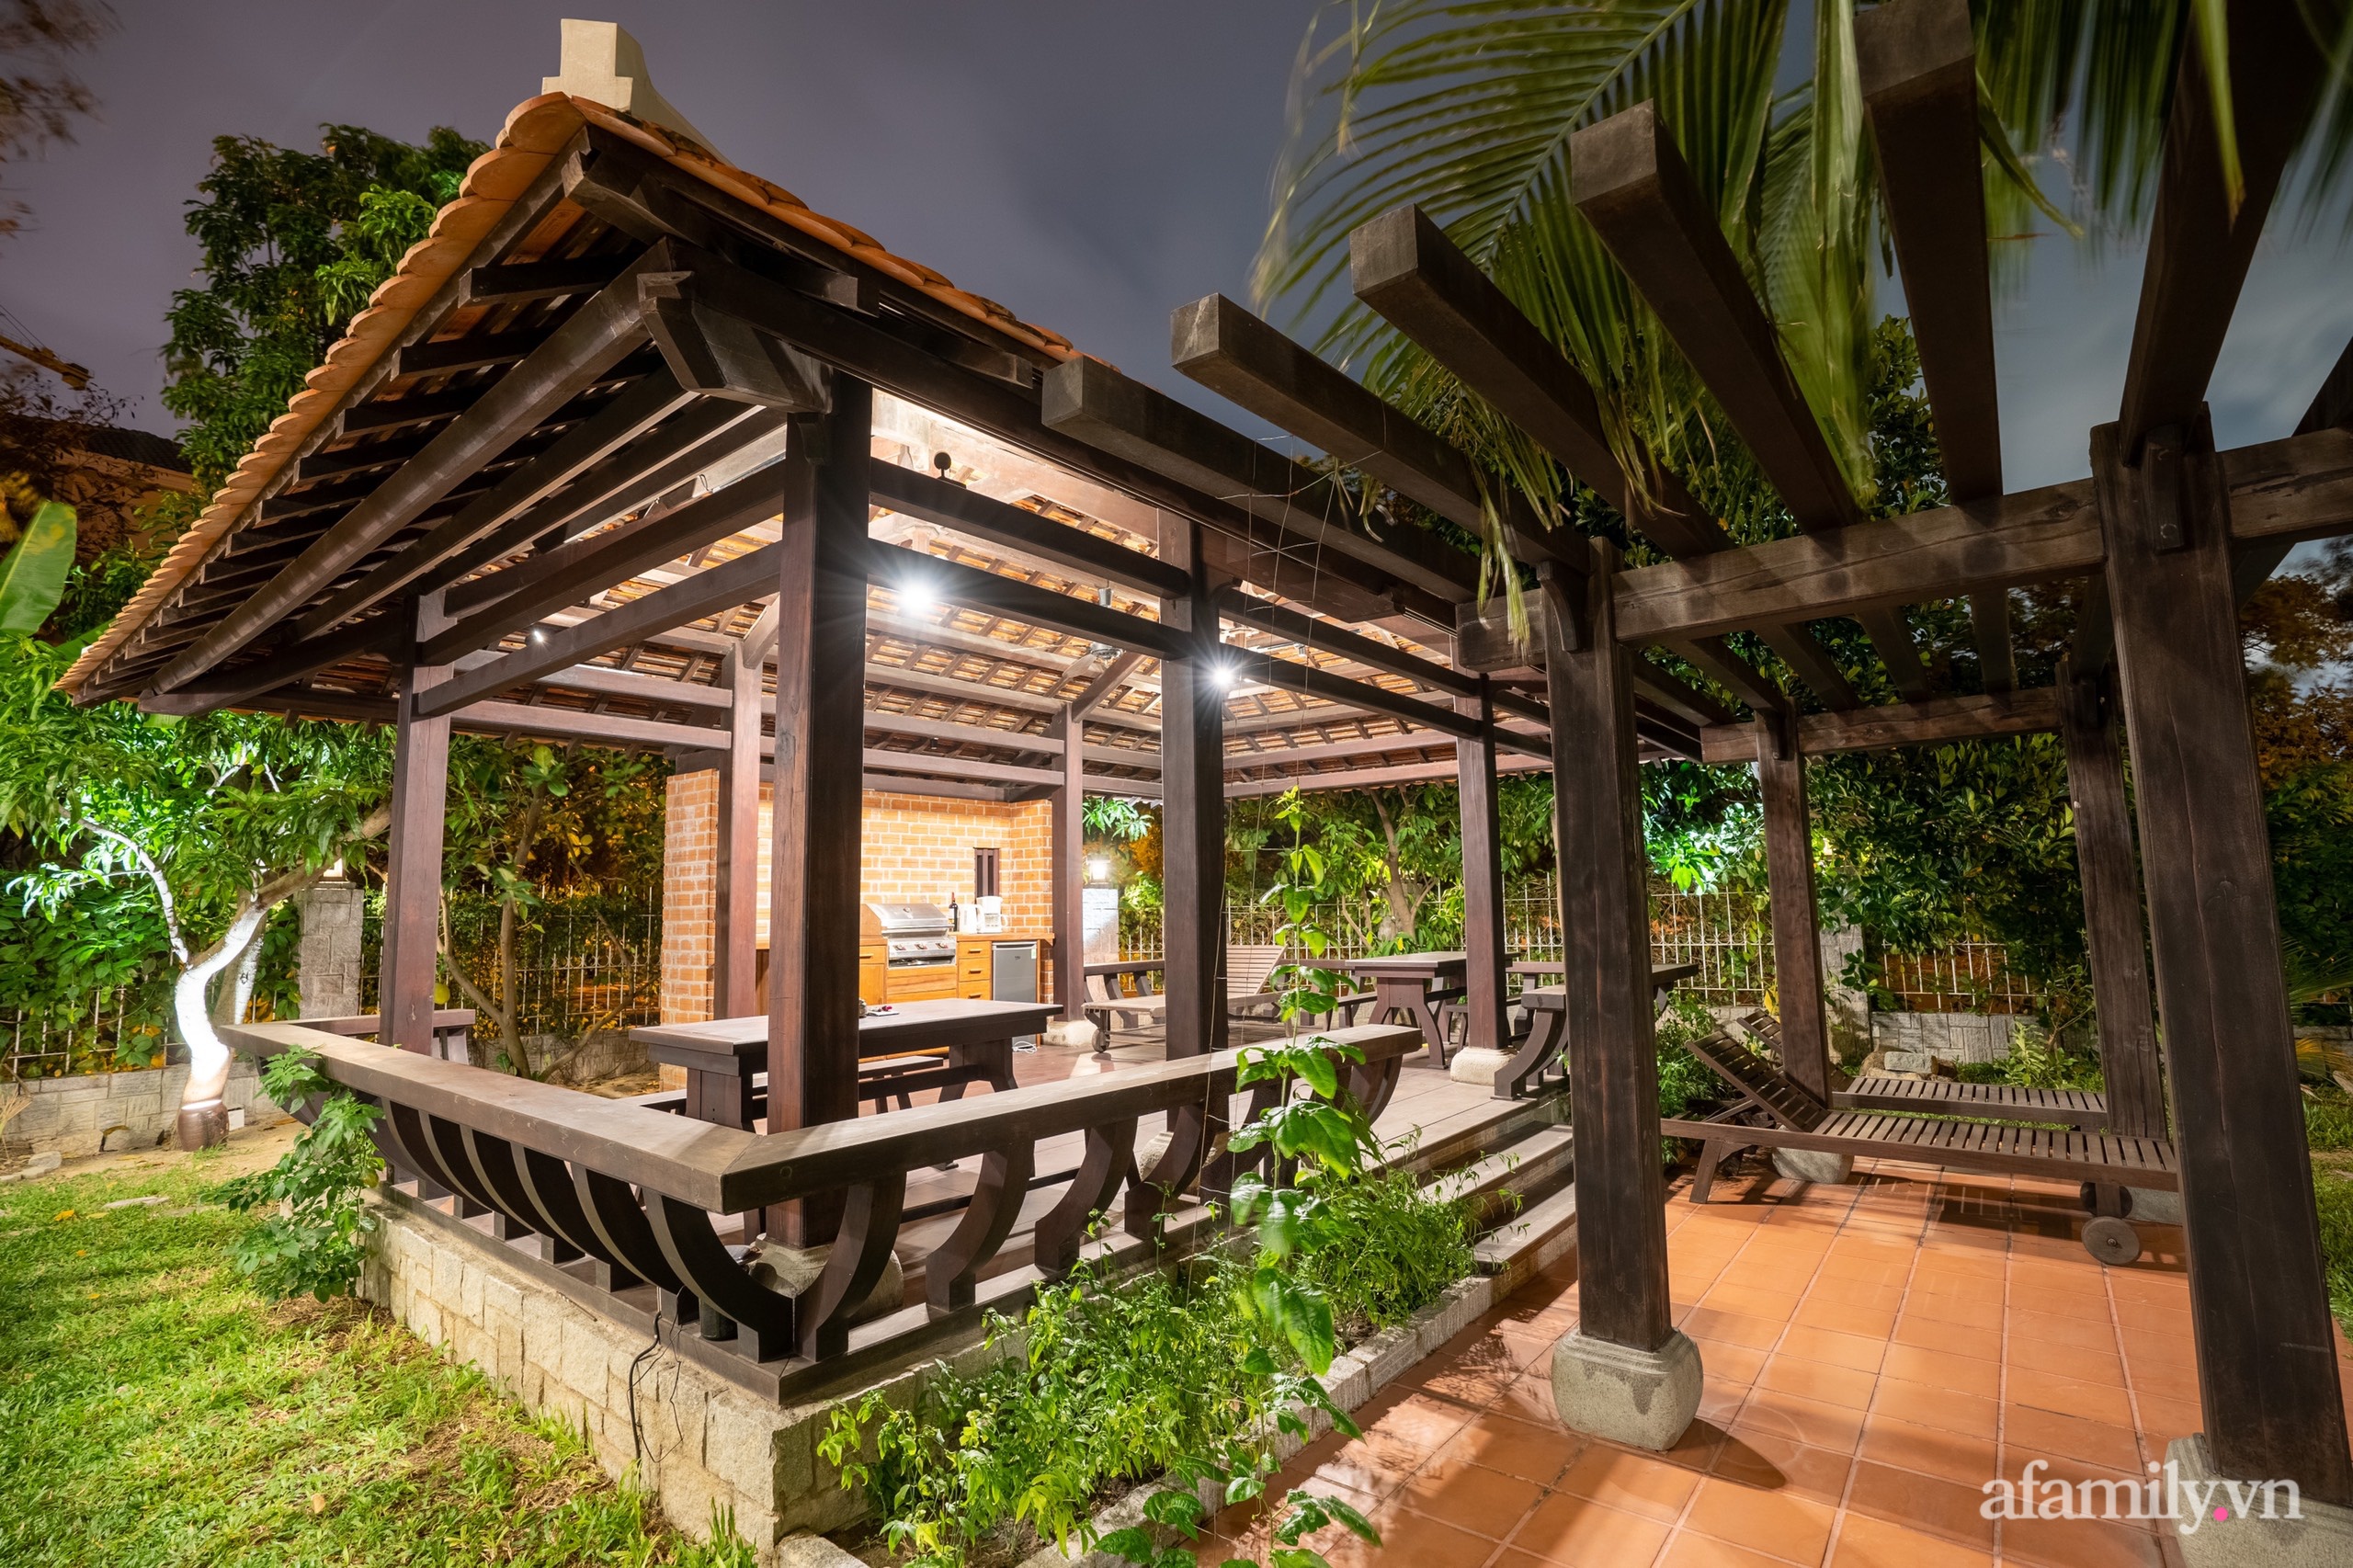 Căn nhà vườn xây 10 năm vẫn đẹp hút mắt với nội thất gỗ và cây xanh quanh nhà ở Nha Trang - Ảnh 5.